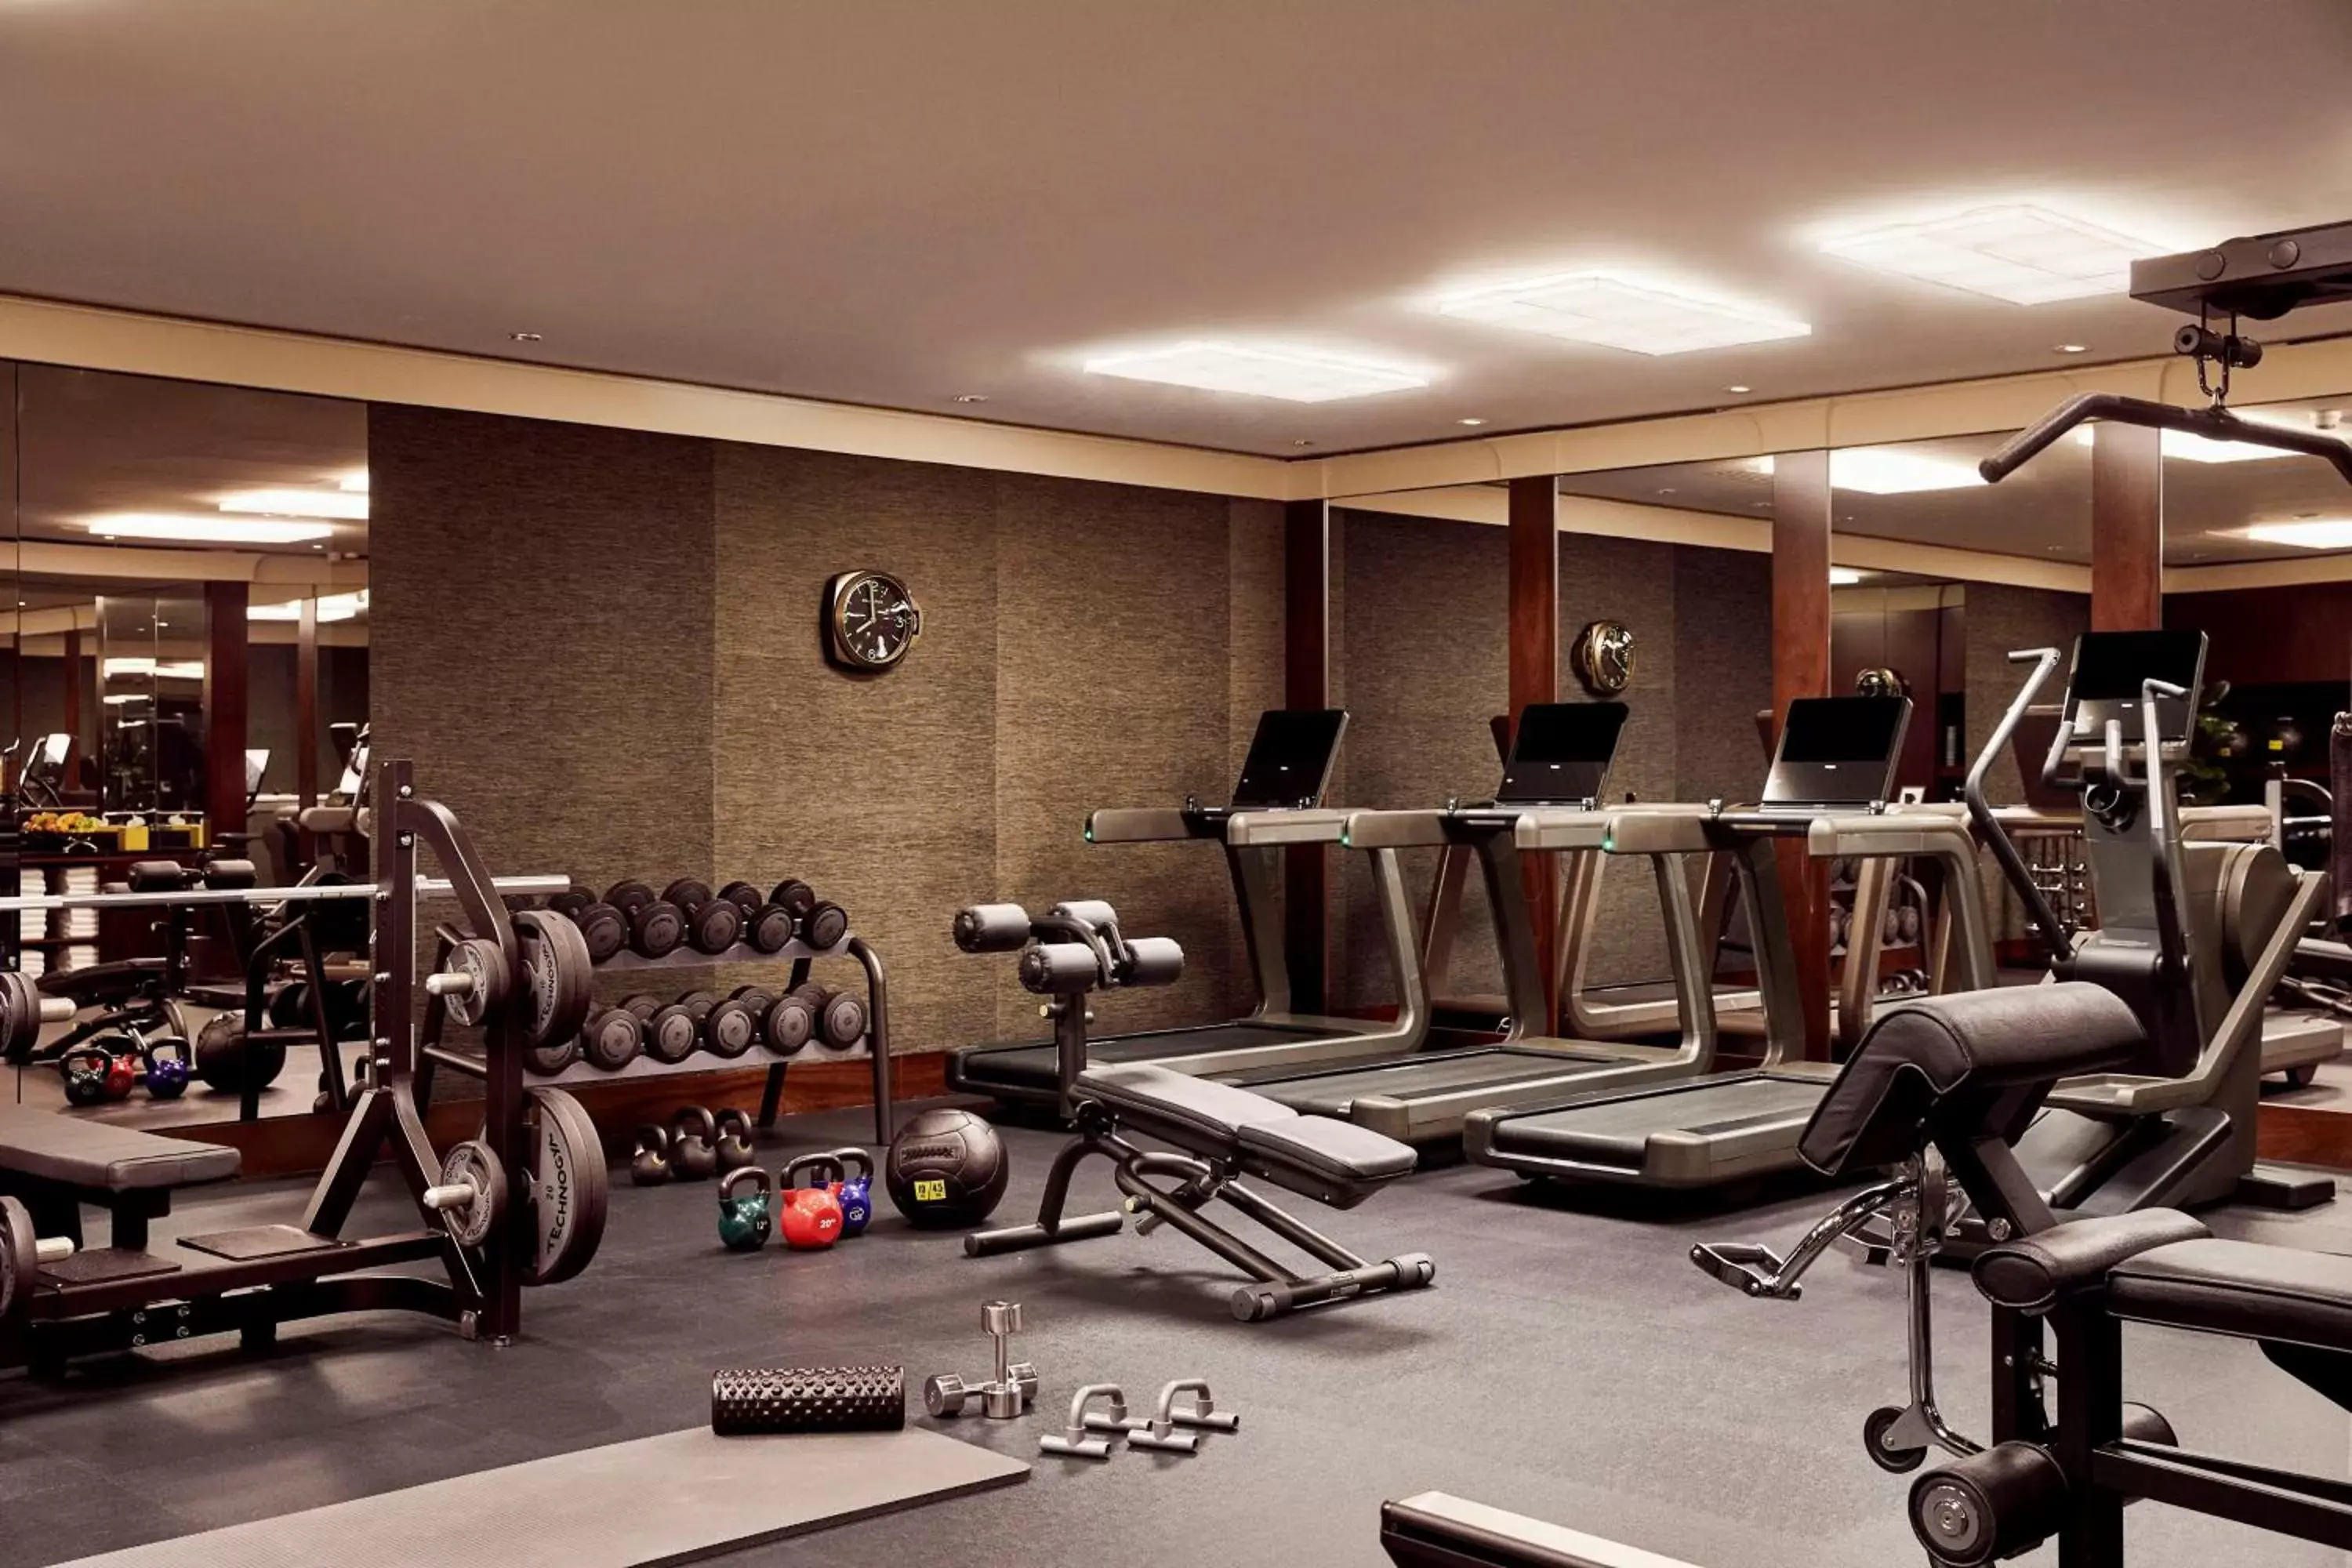 Fitness centre/facilities, Fitness Center/Facilities in Park Hyatt Vendome Hotel